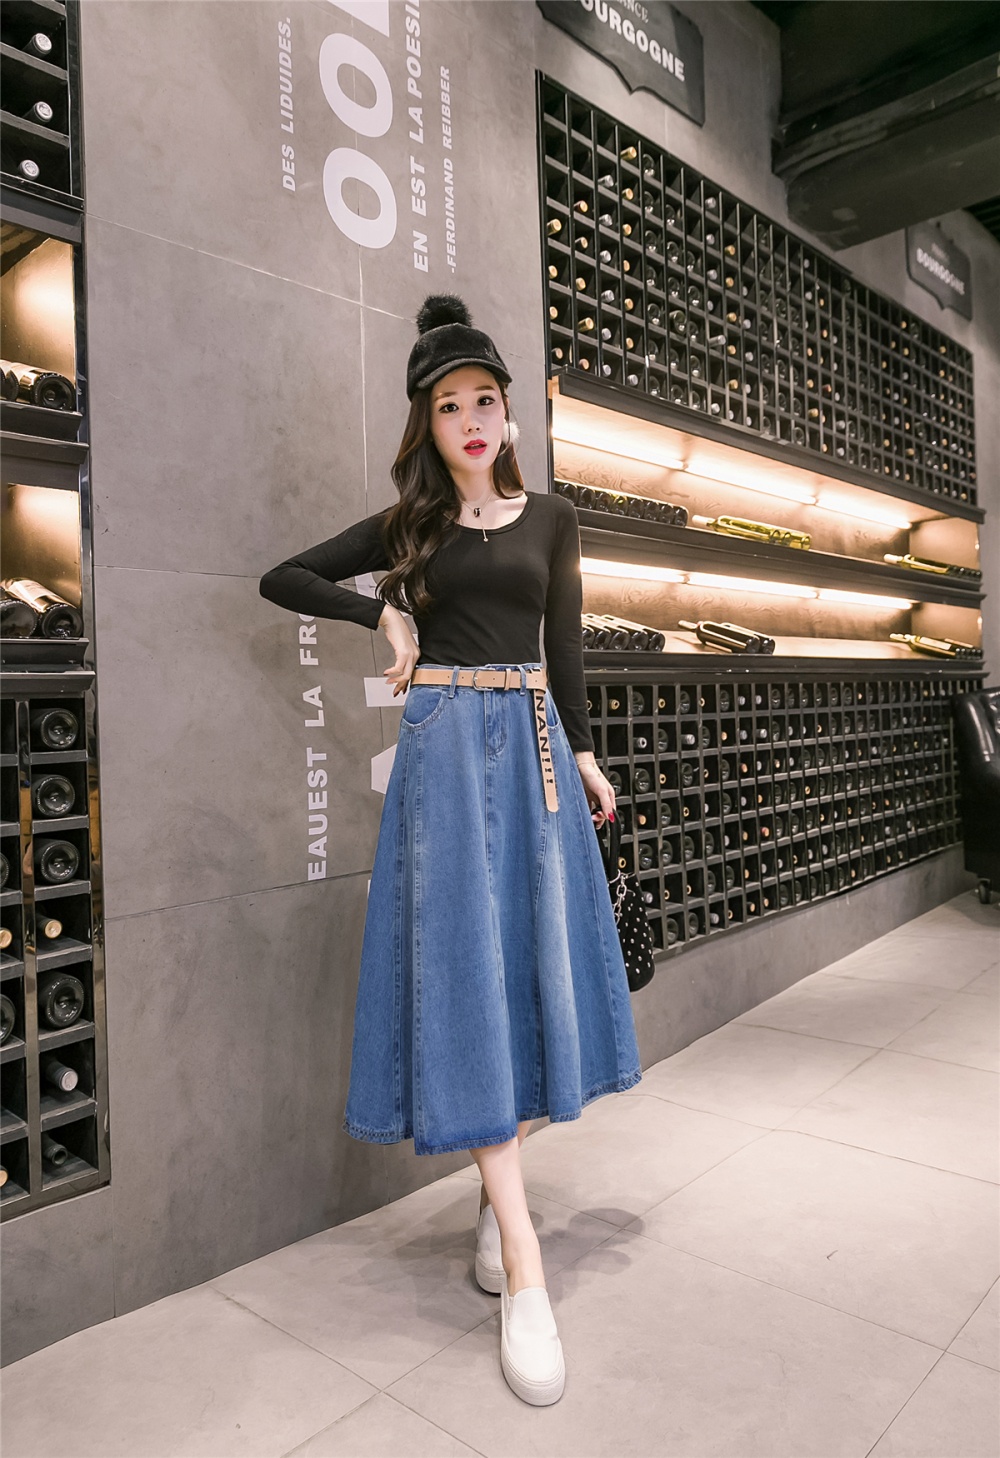 Korean style big skirt long skirt denim slim denim skirt